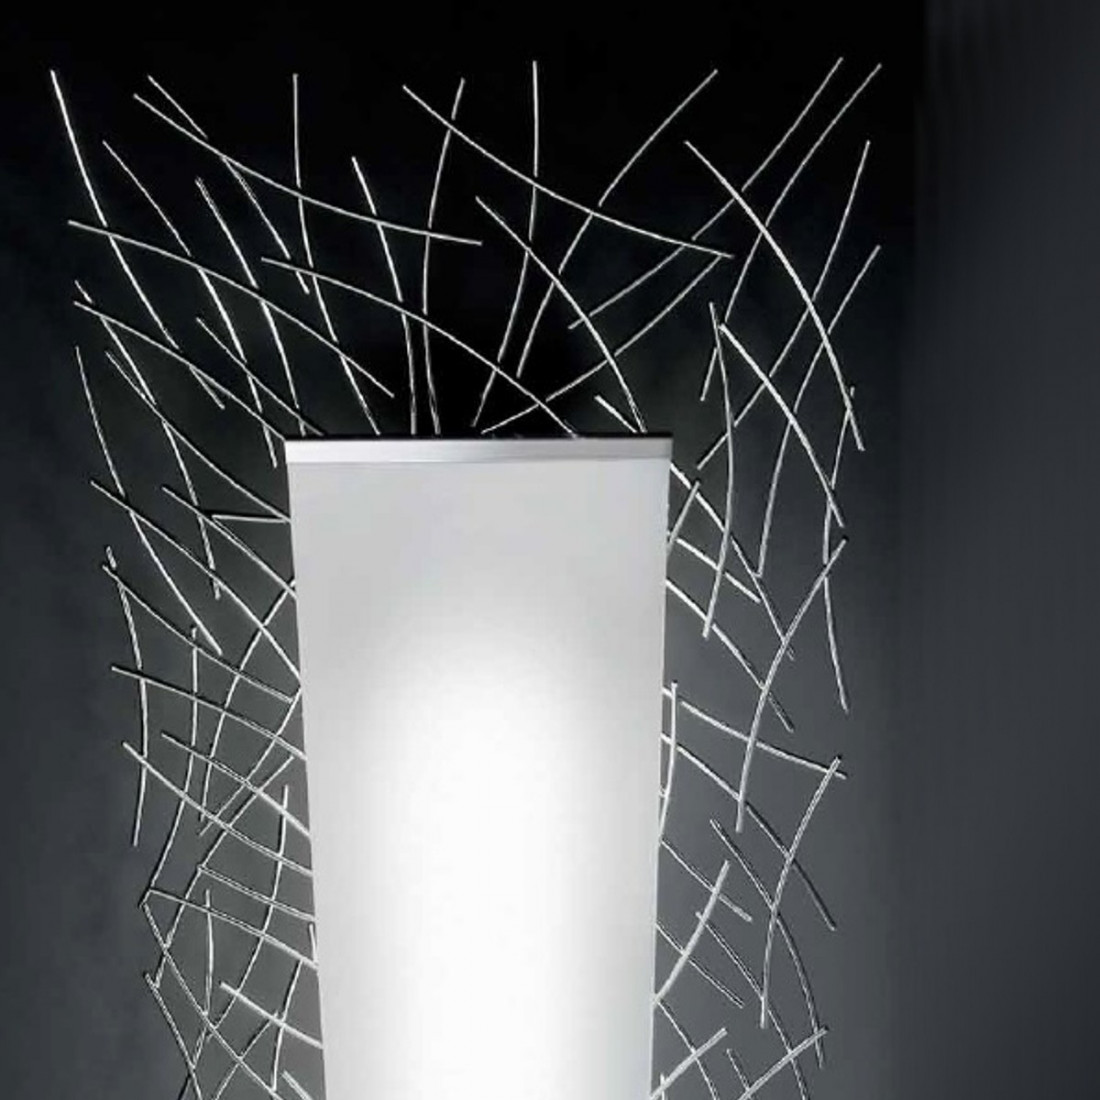 Lampadaire EL-MAJOLIE 381 R7s lampadaire halogène dimmable avec grille intérieure chromée moderne